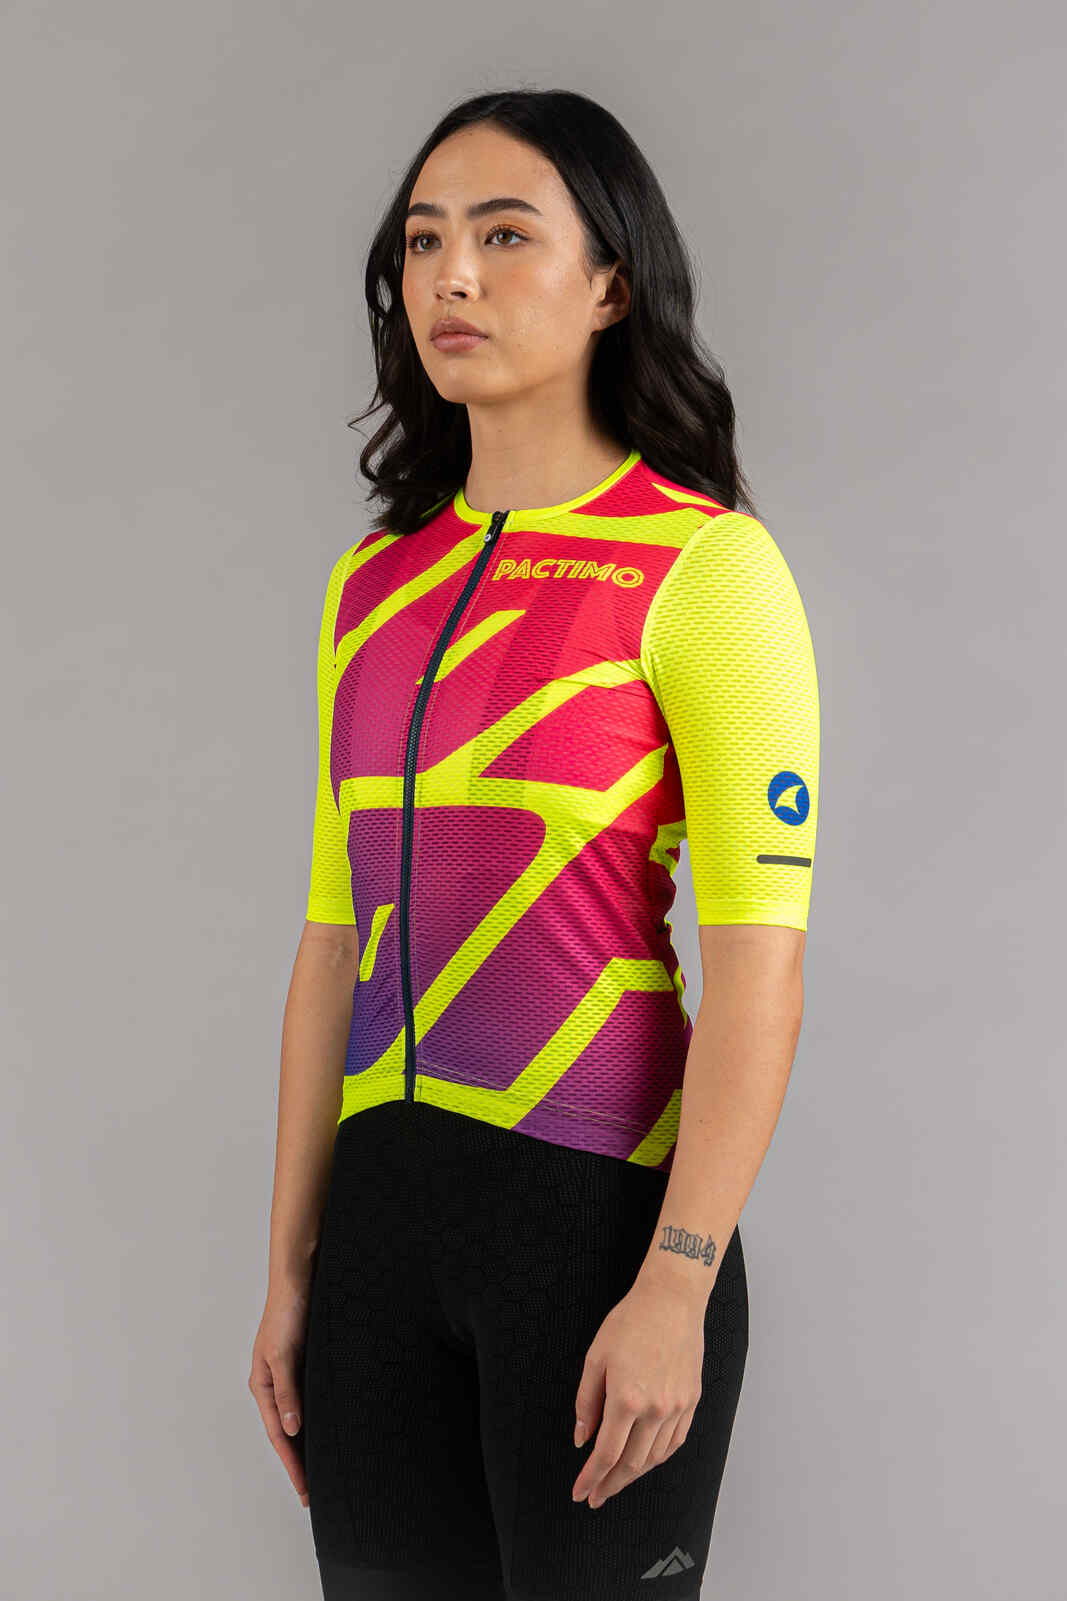 Women's High-Viz Yellow Mesh Cycling Jersey - Front View